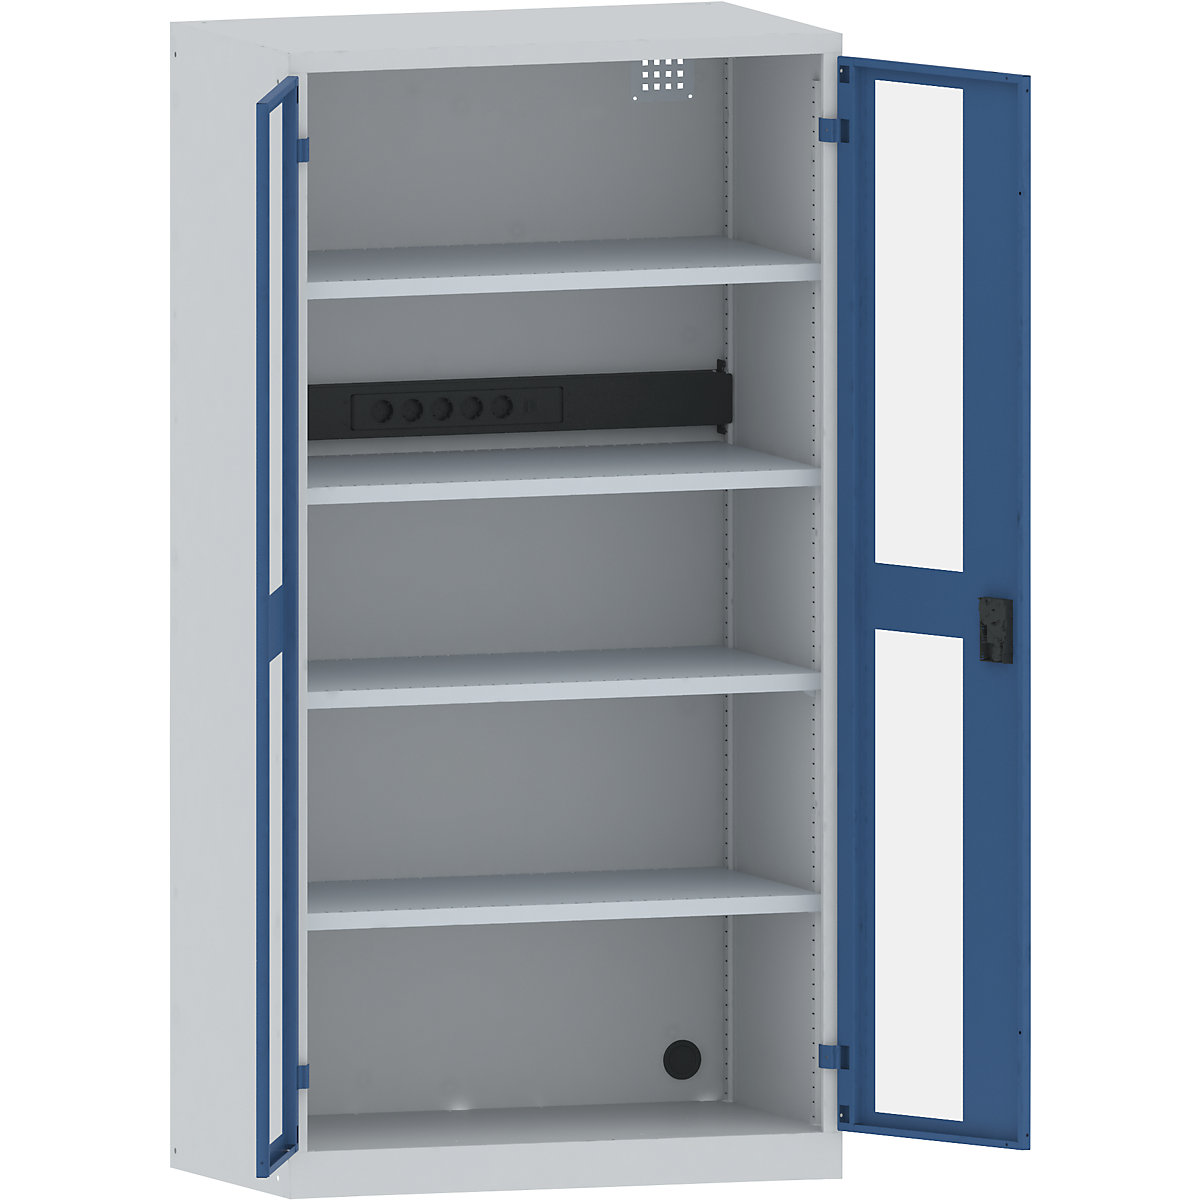 LISTA – Armario cargador de baterías, 4 baldas, puertas con ventanilla, regleta de enchufes detrás, gris / azul